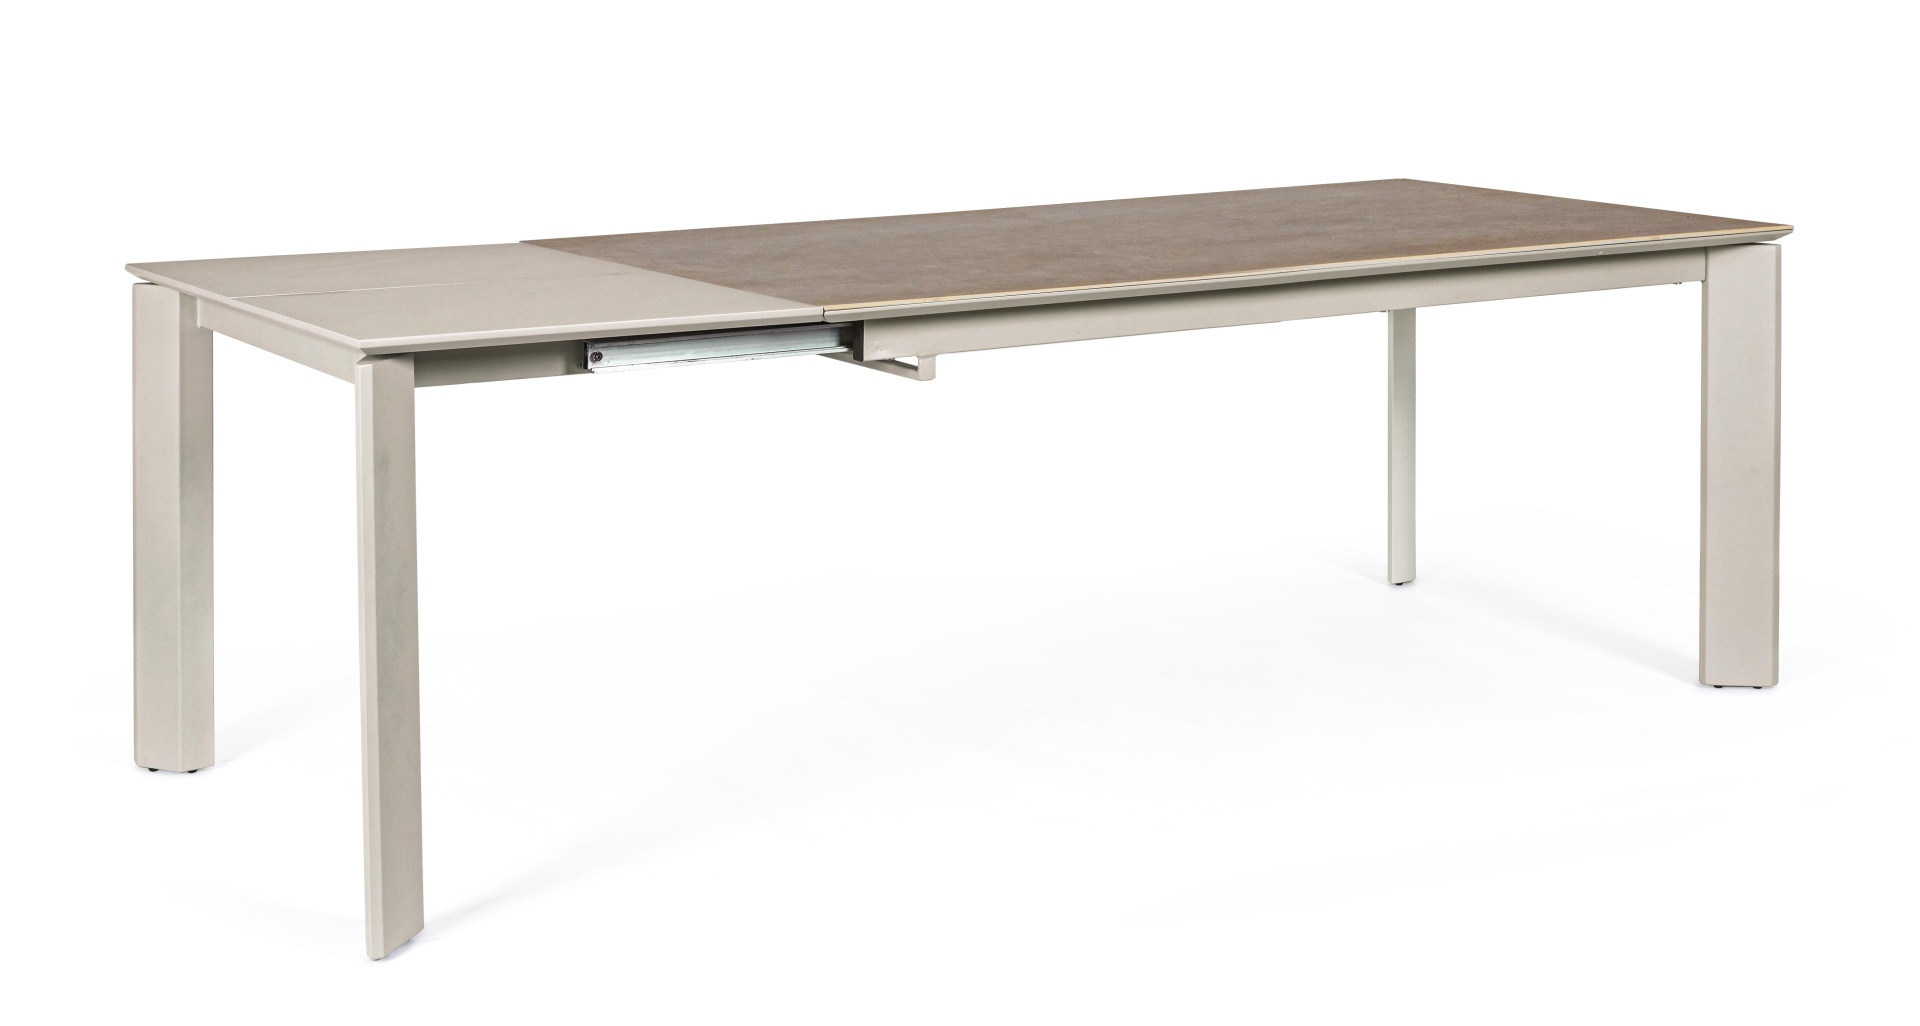 Der Esstisch Briva überzeugt mit seinem moderndem Design. Gefertigt wurde er aus Keramik, welches einen graue Farbton besitzt. Das Gestell des Tisches ist aus Metall und hat eine Taupe Farbe. Der Tisch ist ausziehbar von einer Breite von 160 cm auf 220 cm